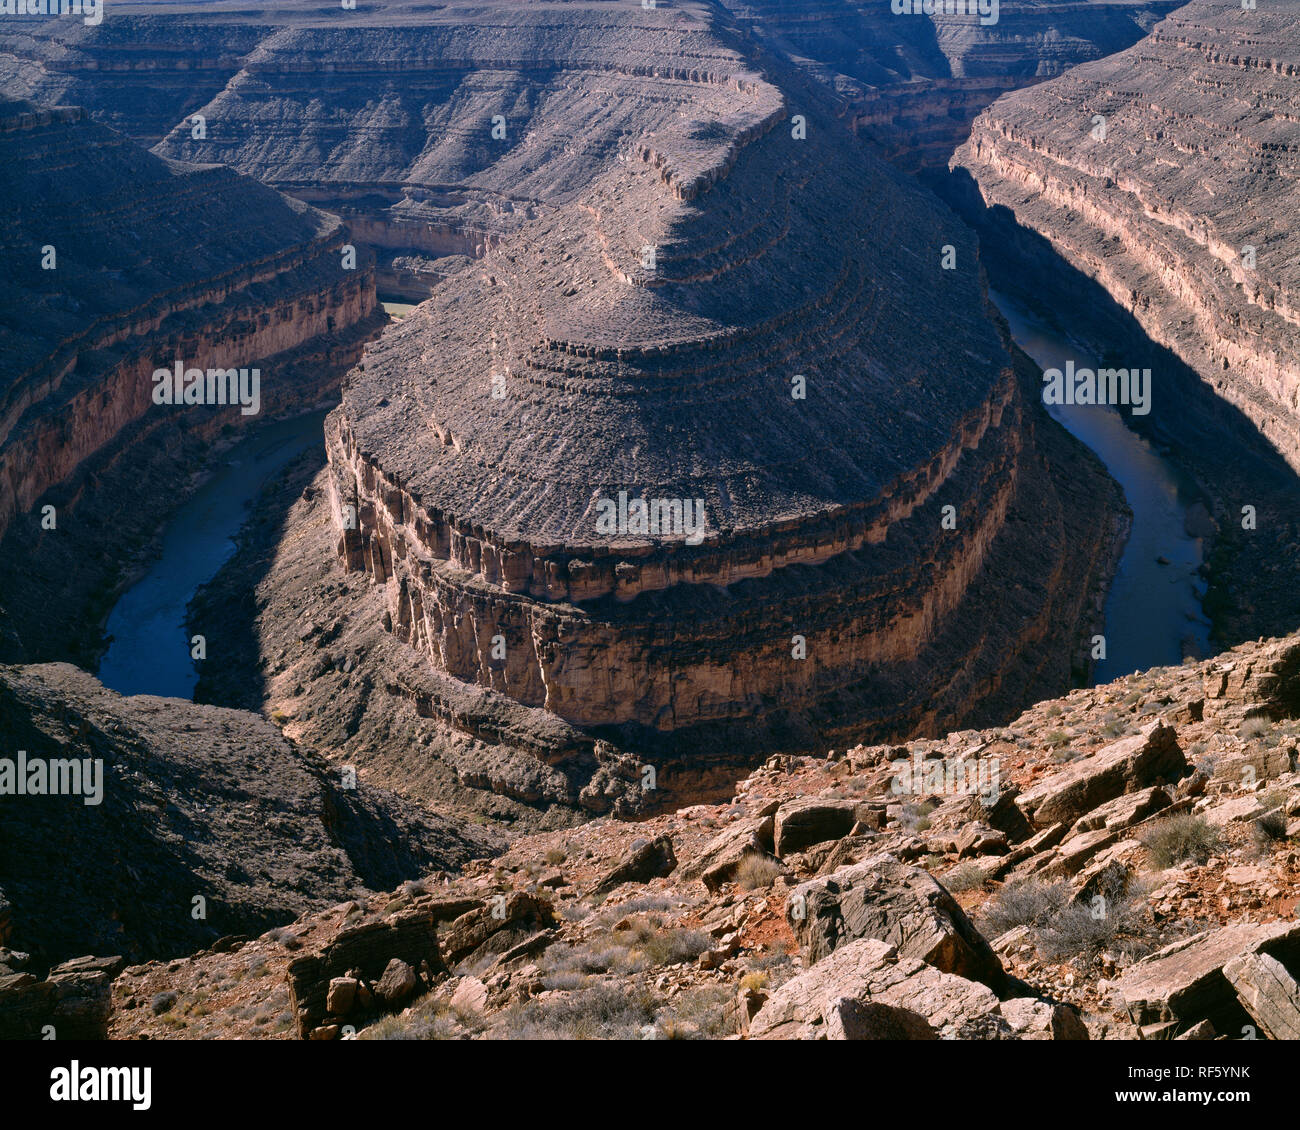 Estados Unidos, Utah State Park, cuellos de cisne; Río San Juan ha erosionado a través de pizarra para formar una curva extrema o el cuello de cisne de unos 1500 pies de profundidad. Foto de stock